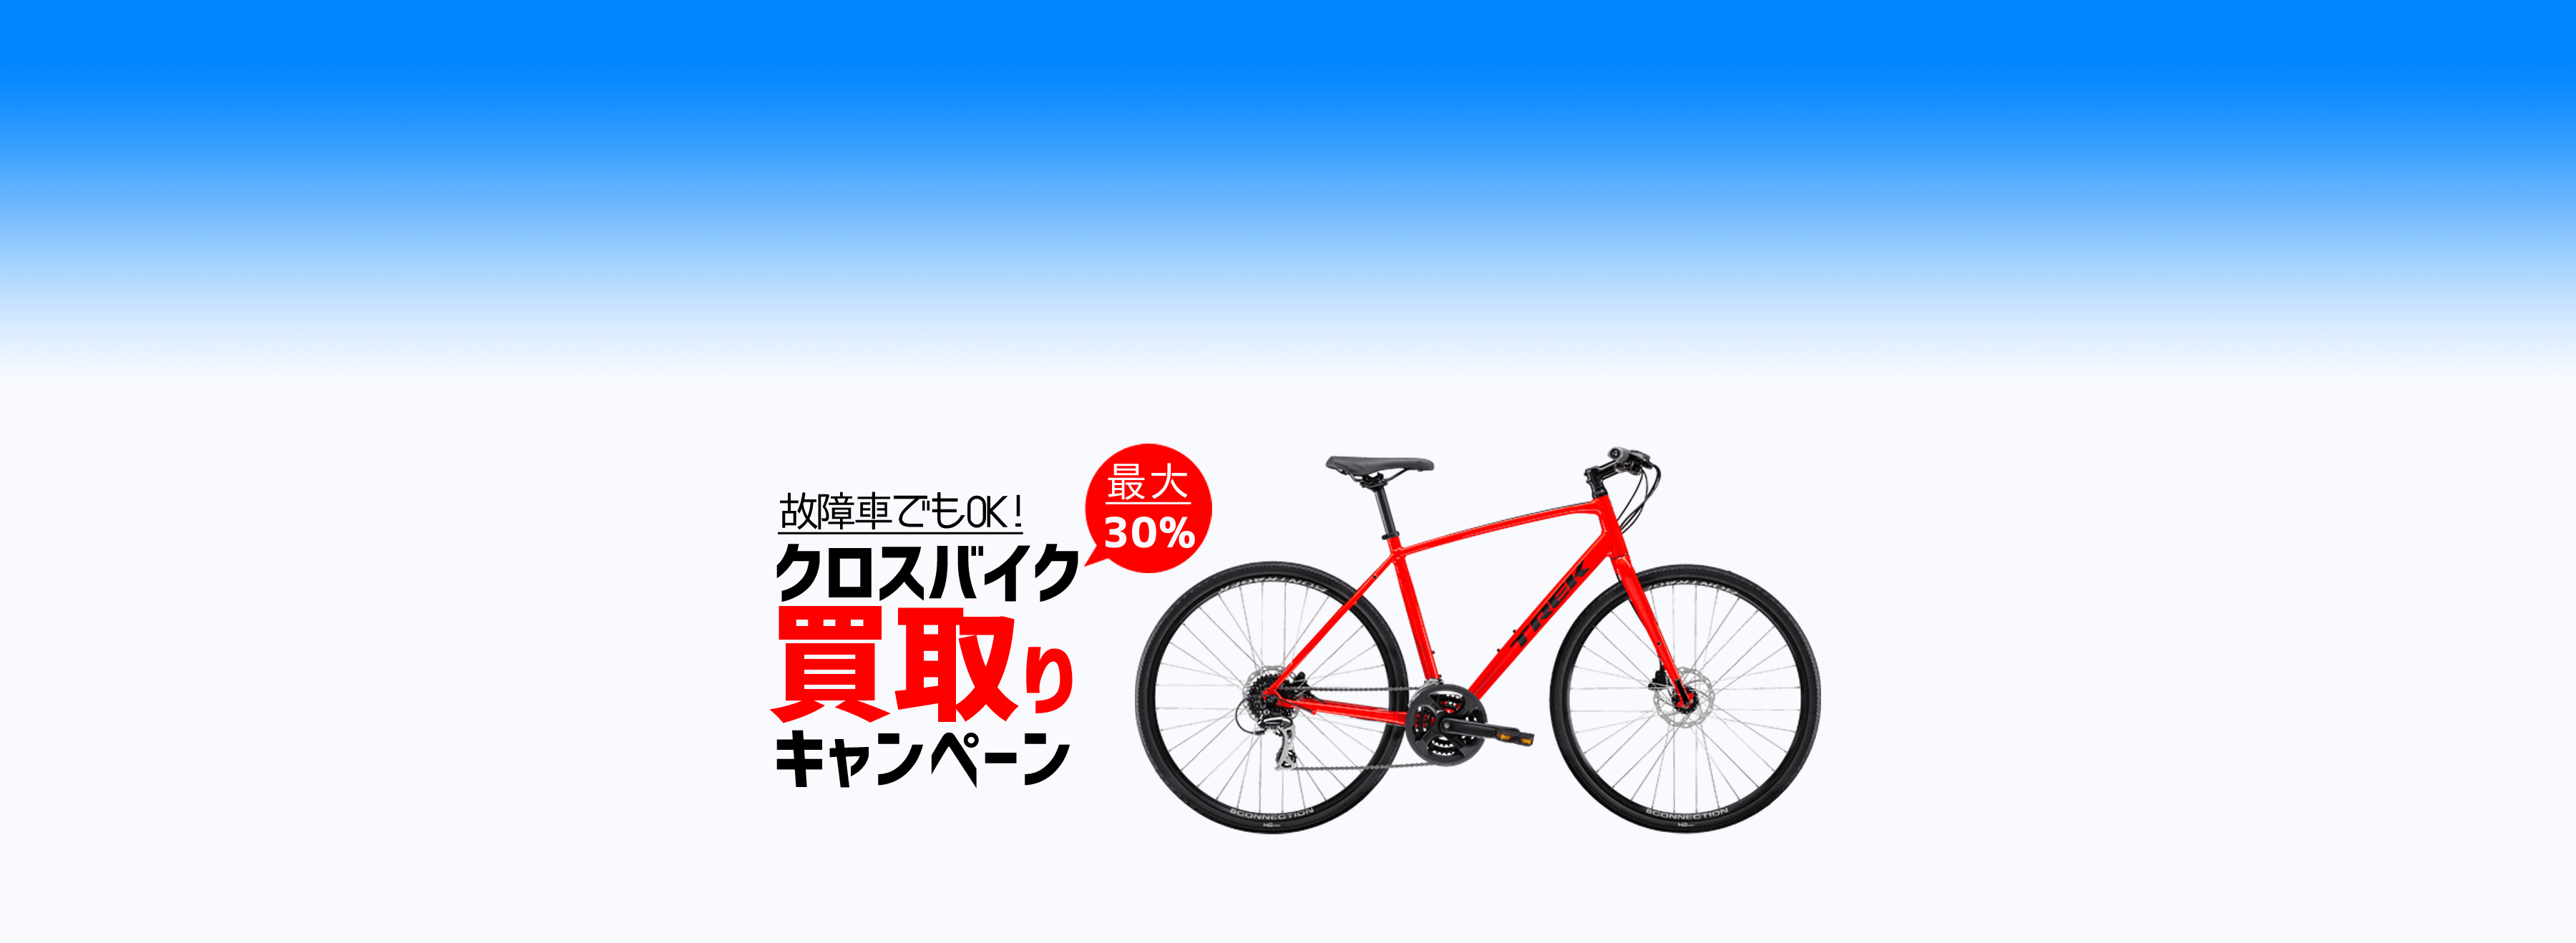 相模原 藤沢のロードバイク クロスバイク自転車 ちばサイクル